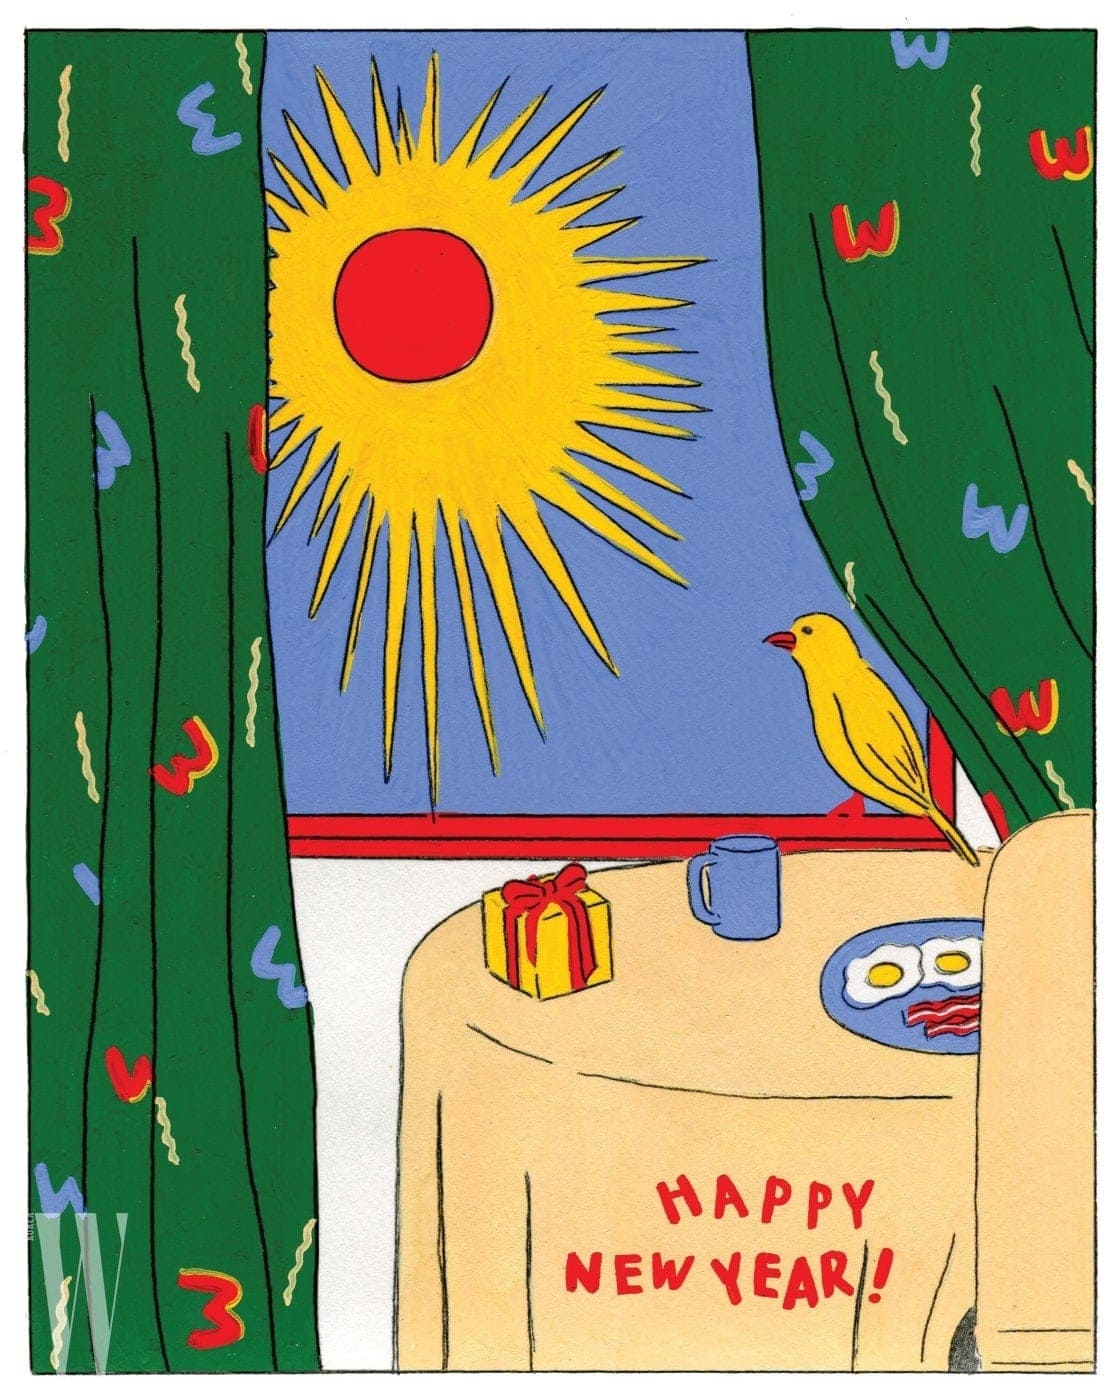 새해 아침의 상쾌함이 느껴지는 그림에 ‘W’ 로고로 커튼을 장식해 협업의 의미를 더한 키미앤드12 카드.